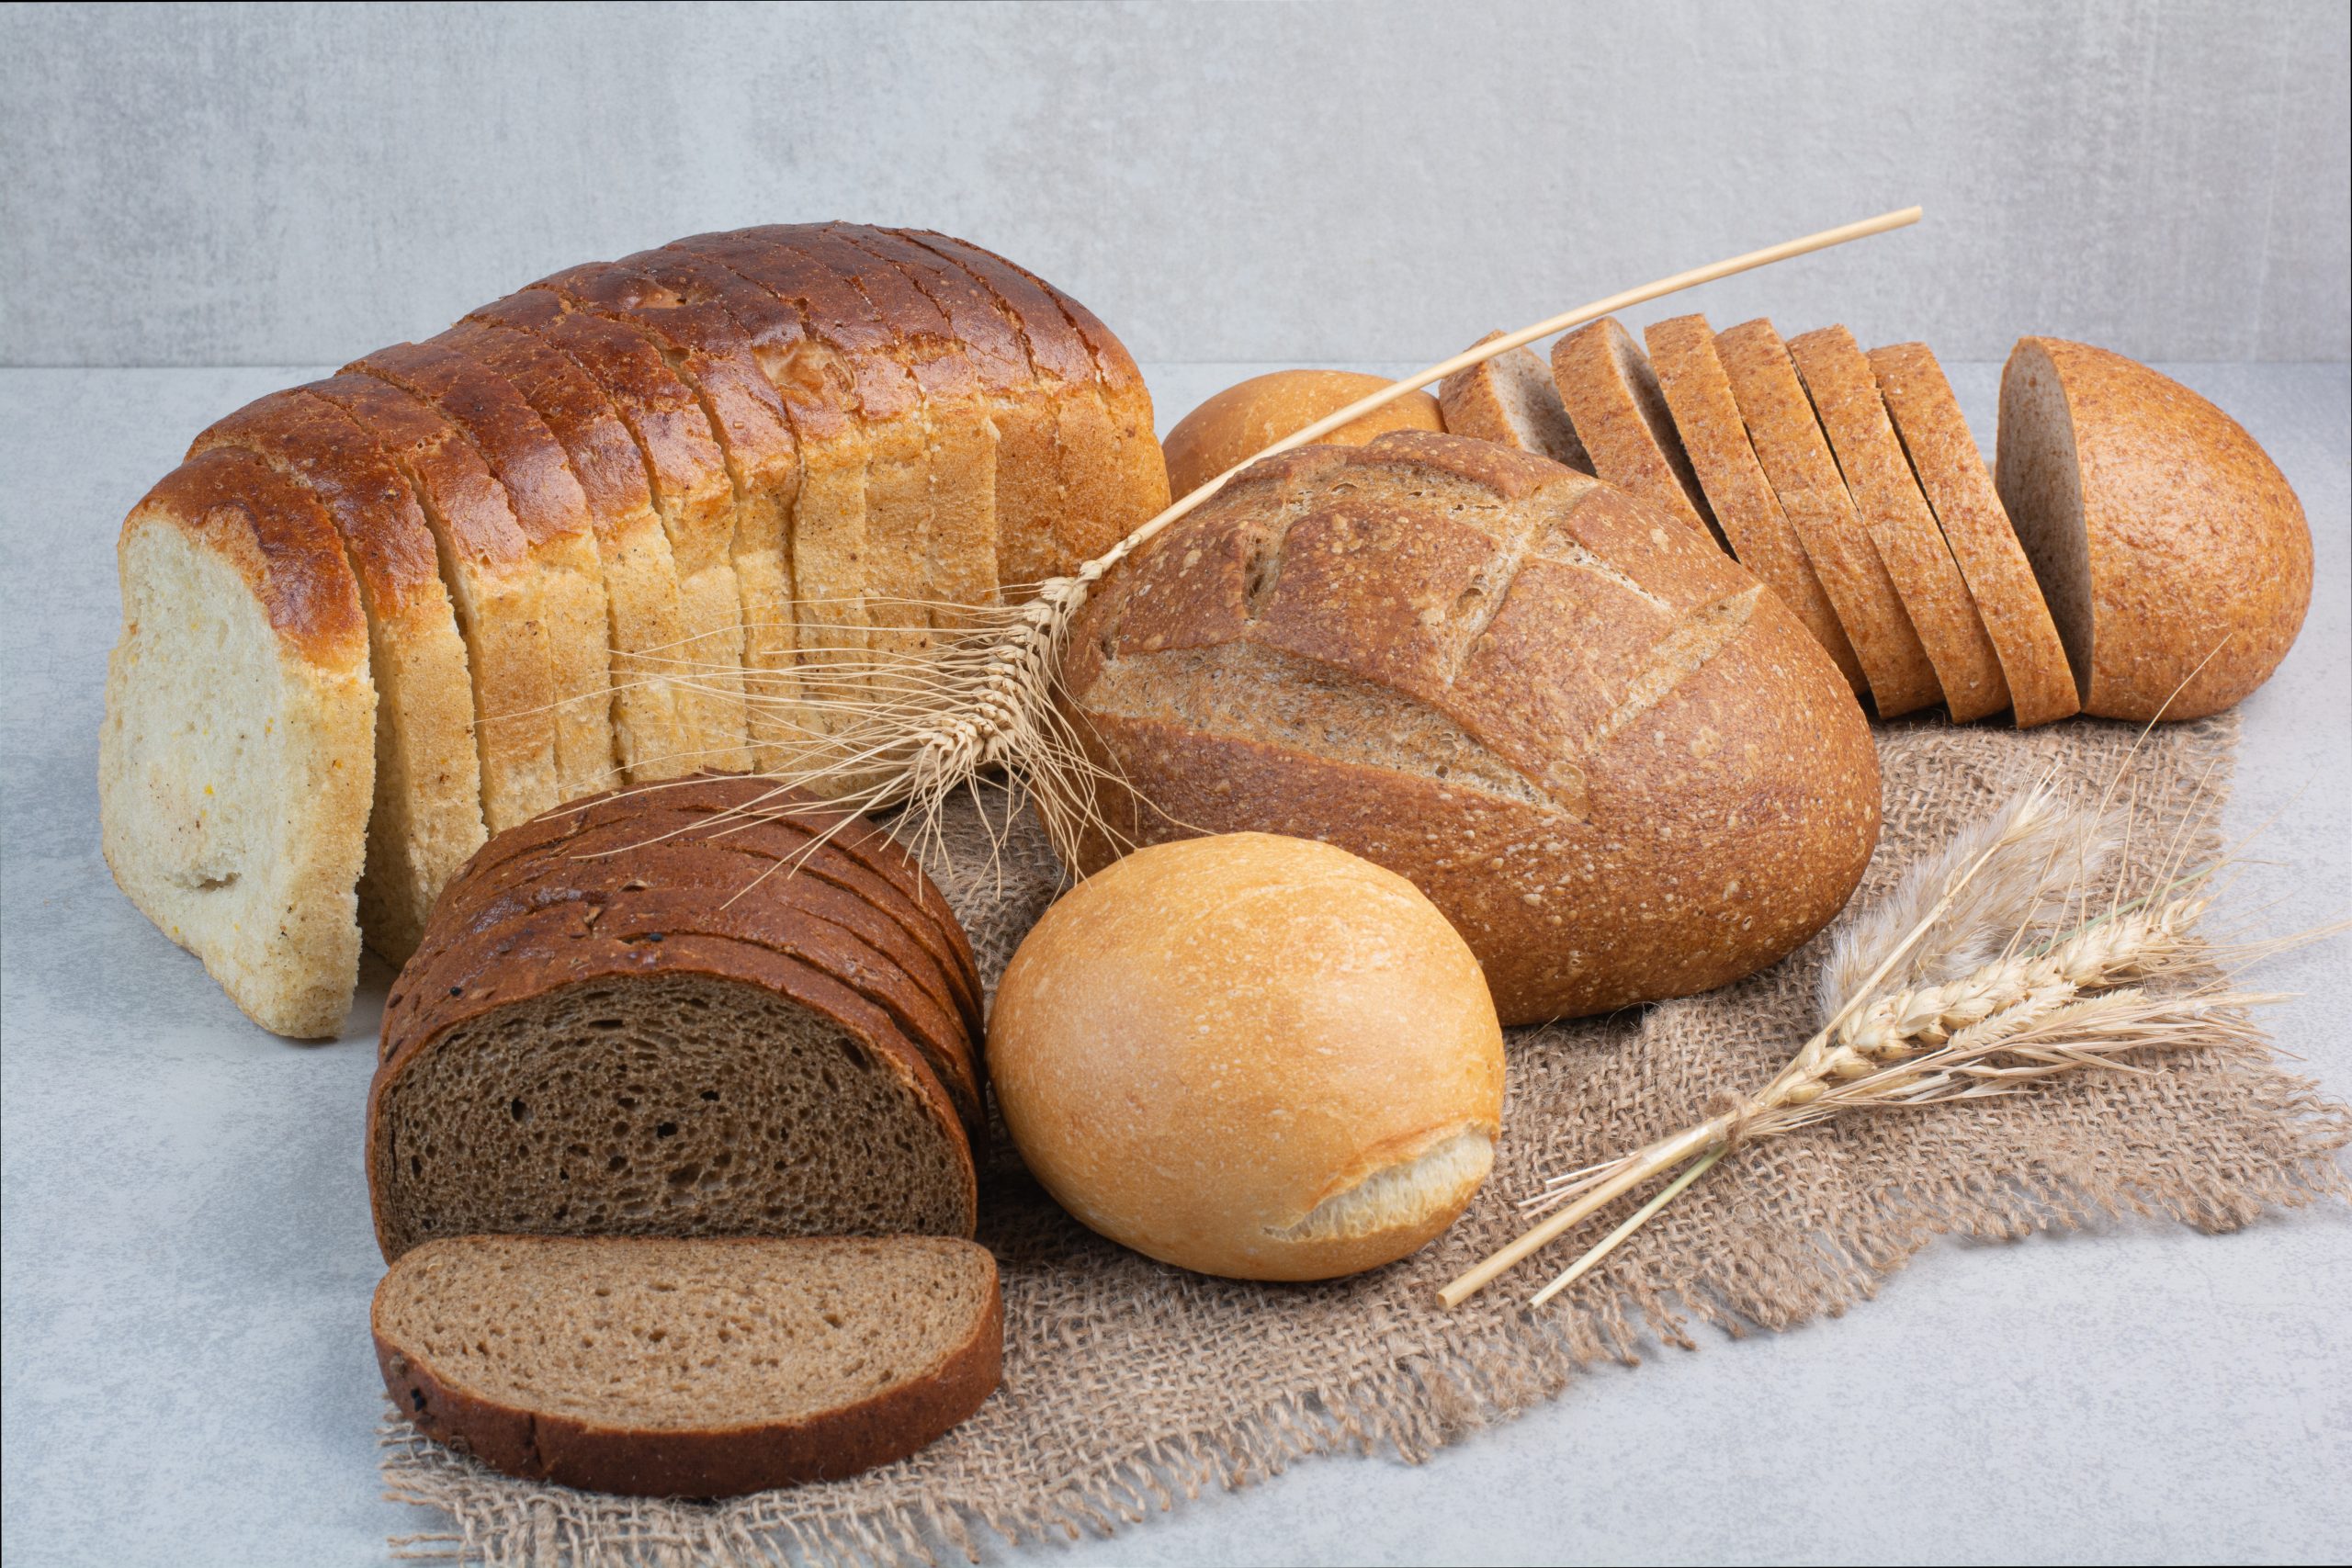 Διατροφή Χαμηλού Γλυκαιμικού Δείκτη Είναι η απάντηση στη ρύθμιση της πείνας 23 scaled - Ψωμί: To Bασικό προϊόν της διατροφής μας έχει υψηλό γλυκαιμικό δείκτη!